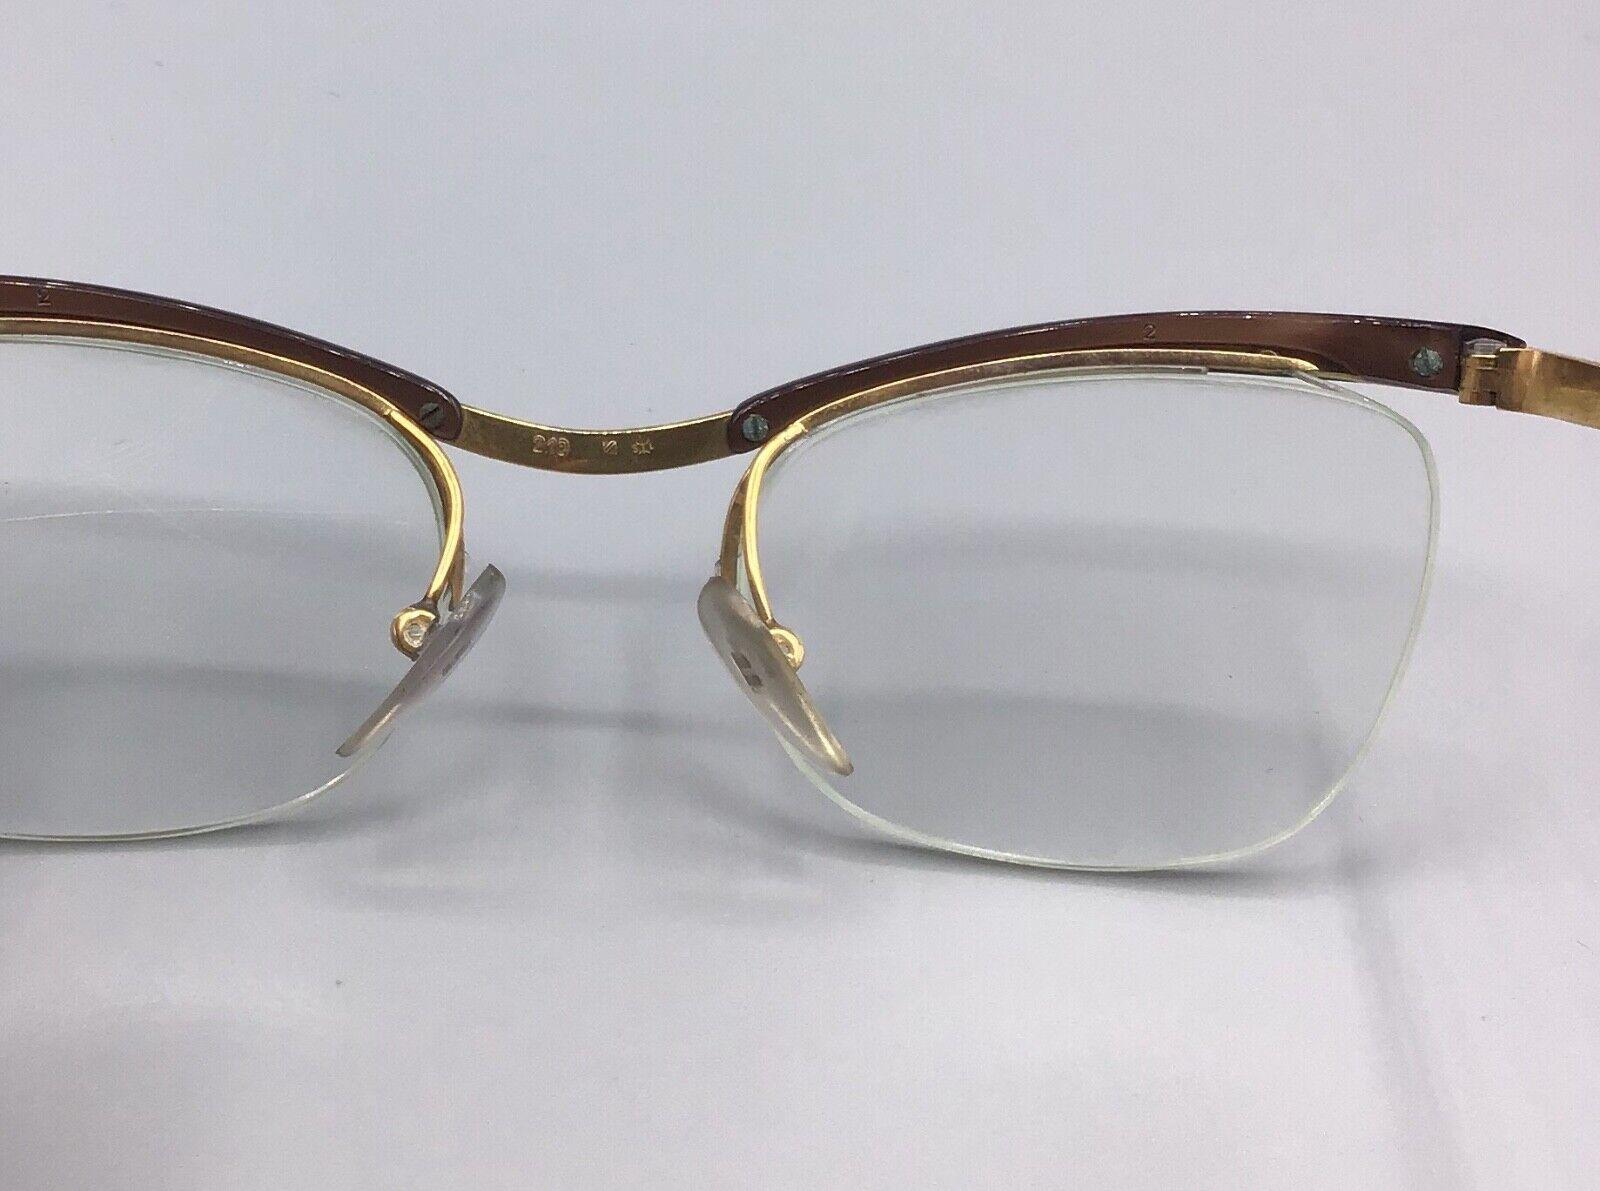 Essel Nylor lunettes vintage Paris brillen occhiale eyewear + case eyeglasses